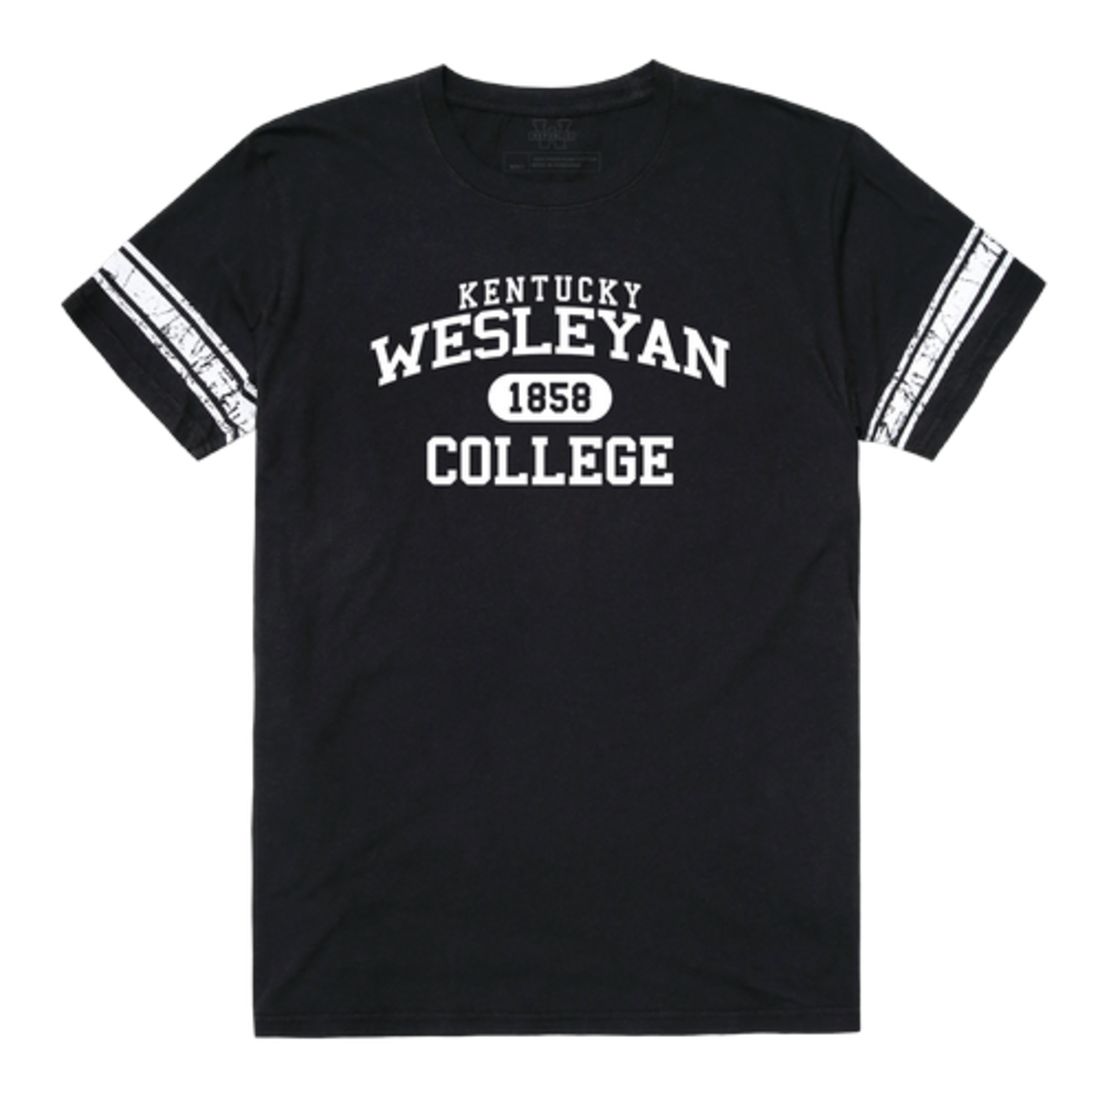 Kentucky Wesleyan College Panthers Property Football T-Shirt Tee